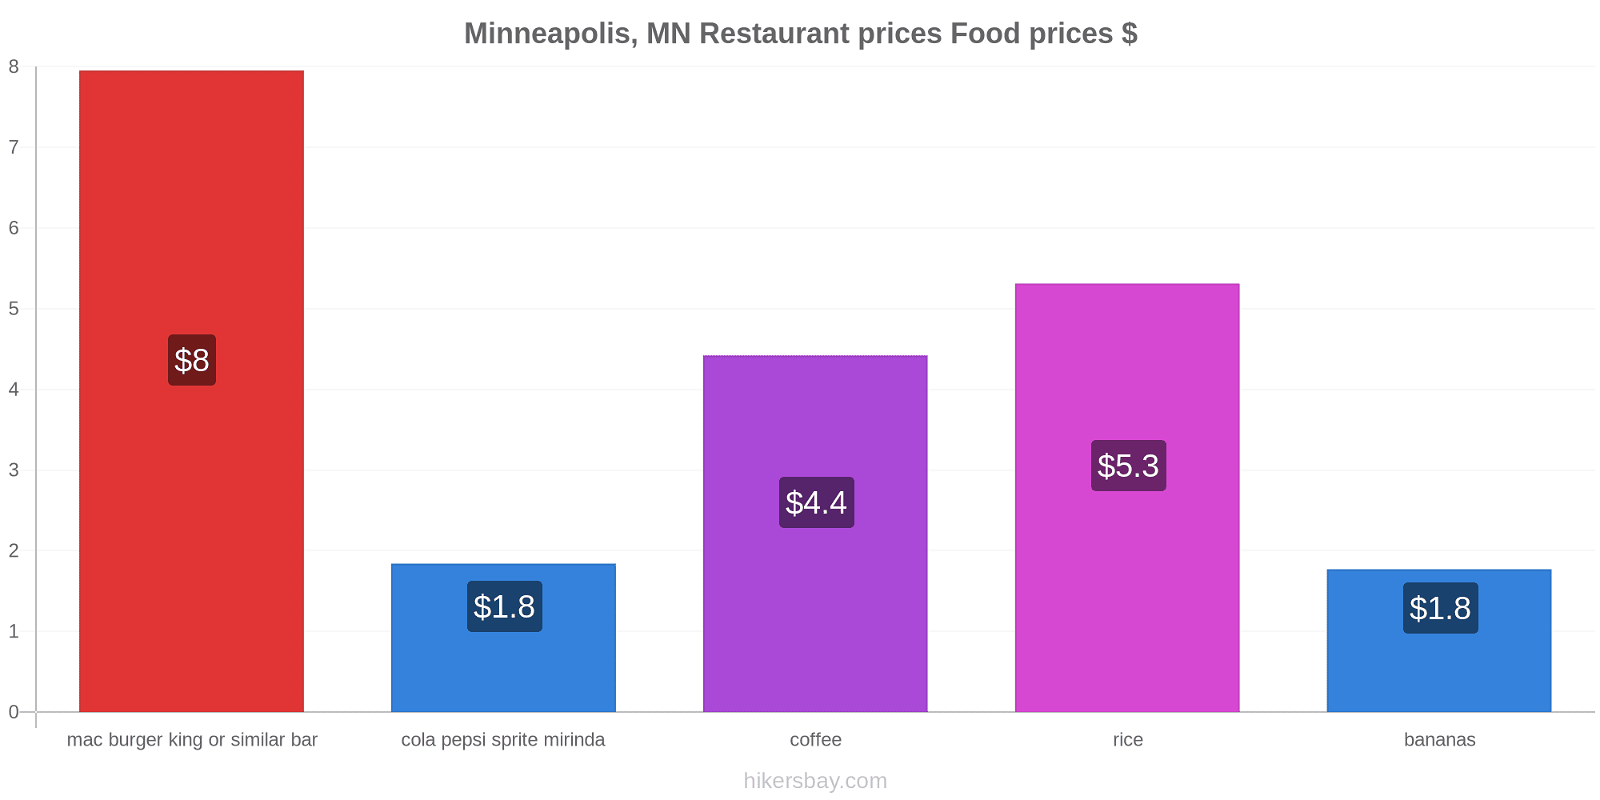 Minneapolis, MN price changes hikersbay.com